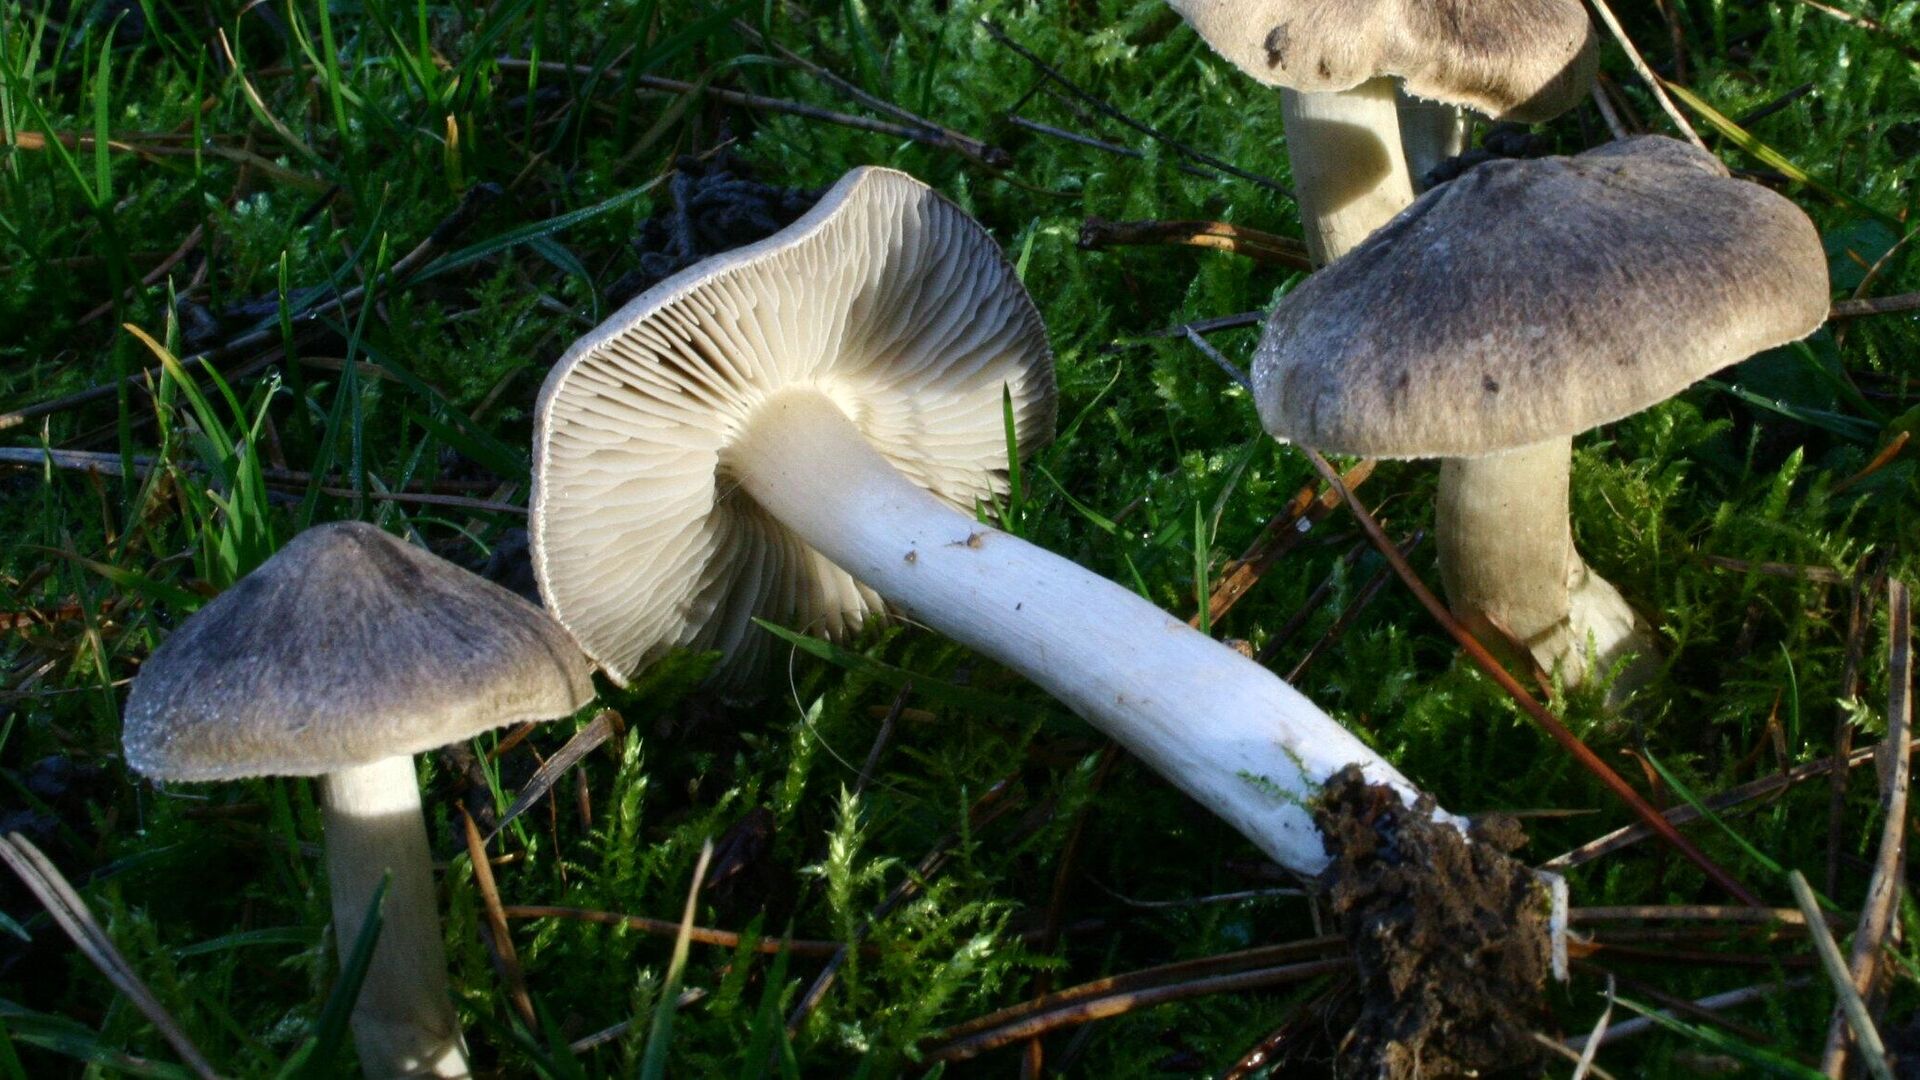 Рядовка: описание гриба, где растет, виды, съедобность, как отличить отядовитого